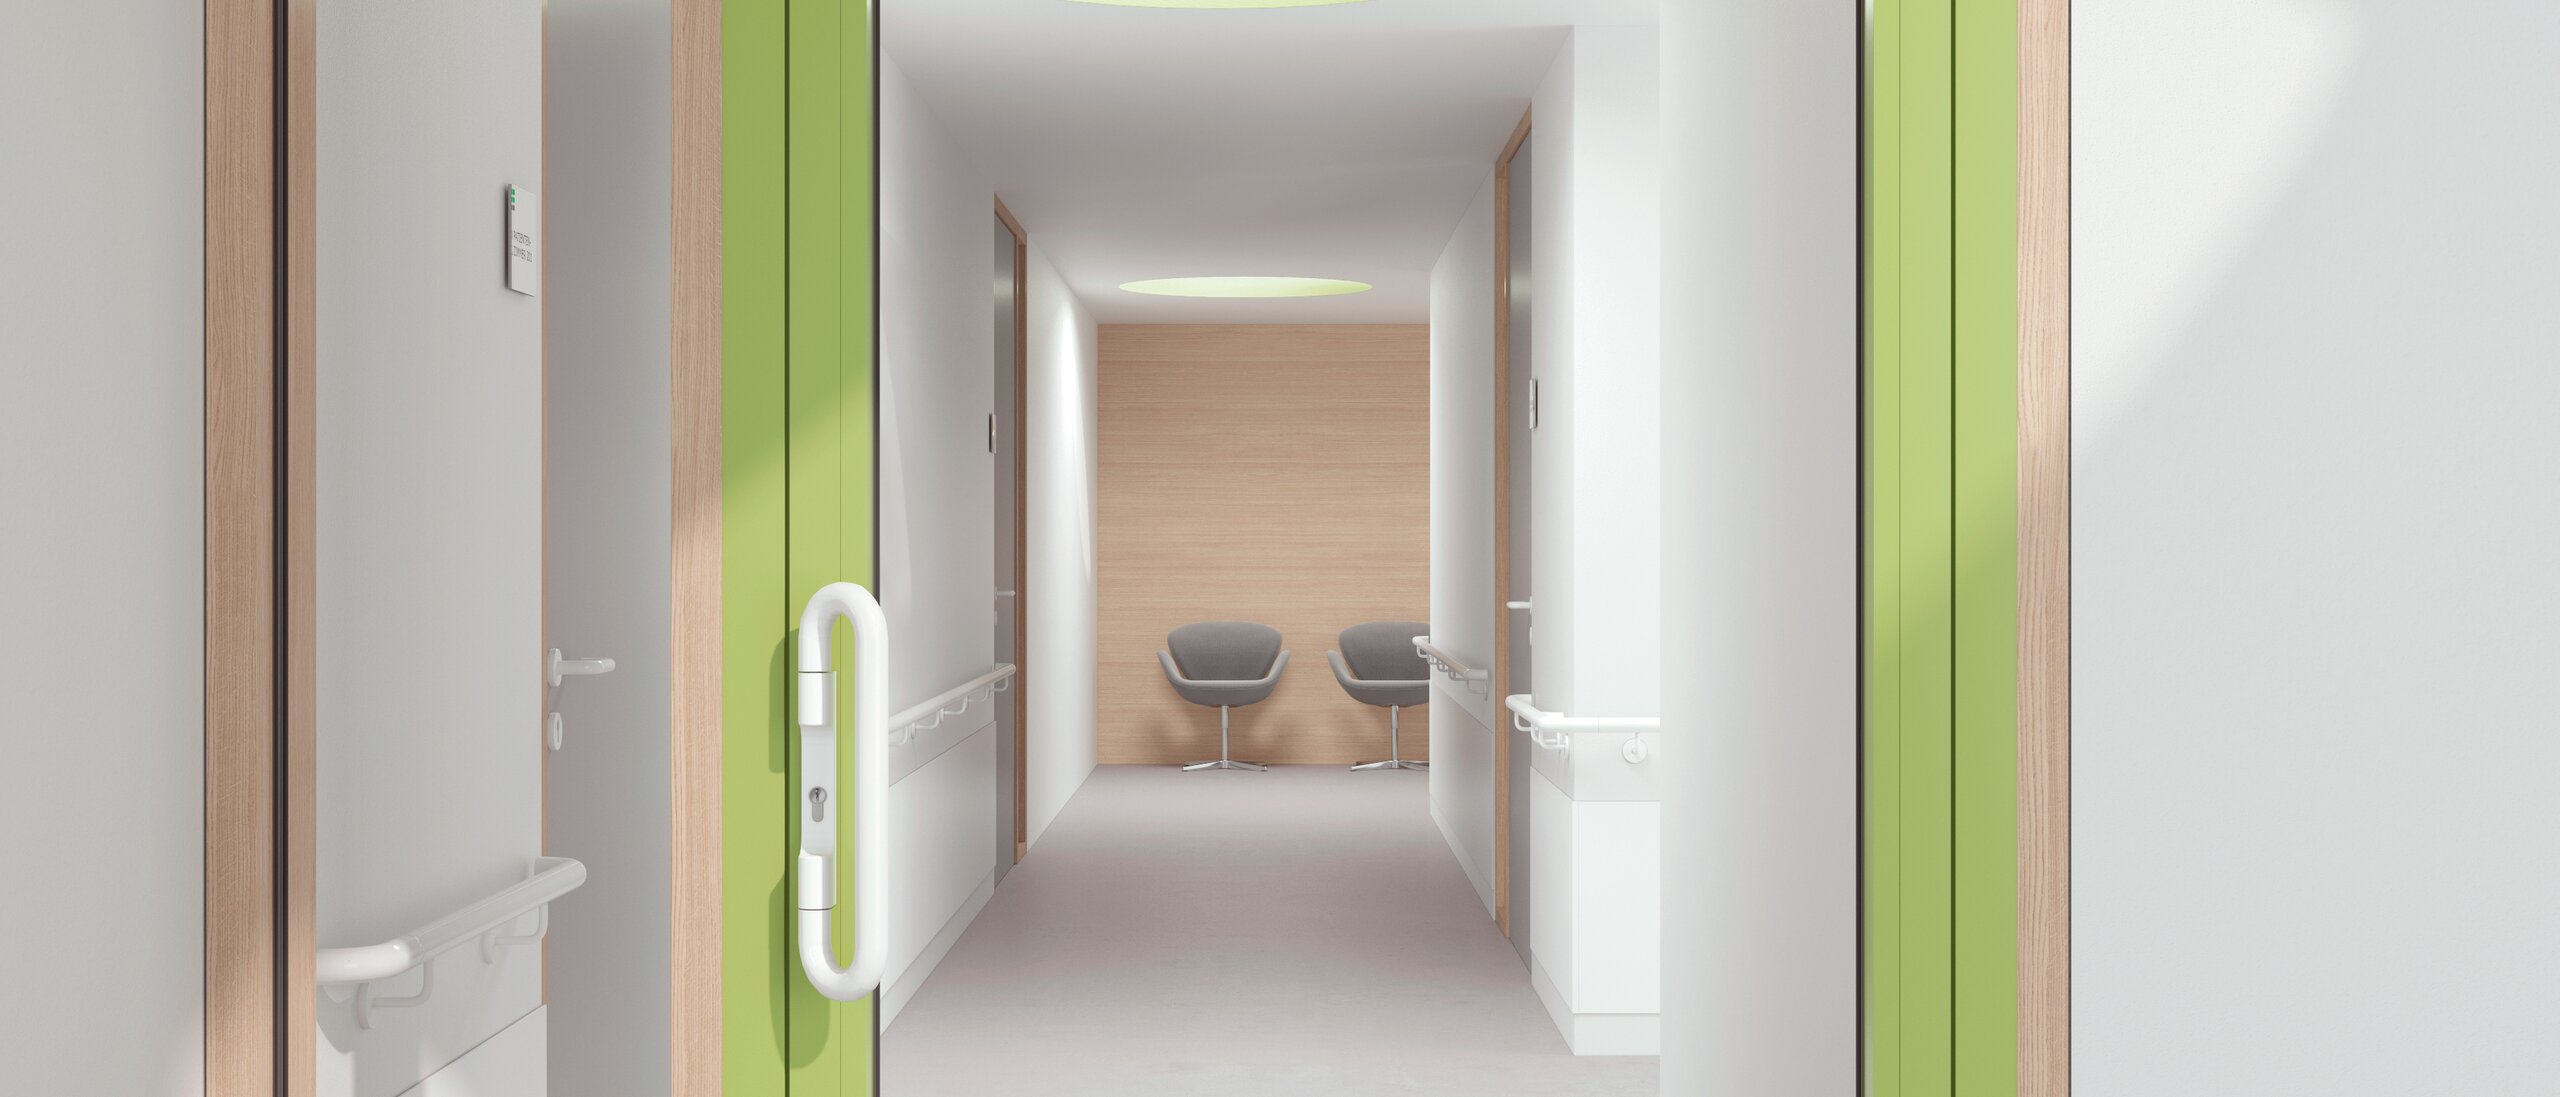 Verglaste Krankenhaustür mit grünem Rahmen ausgestattet mit HEWI Drückergriff in Signalweiß aus Polyamid